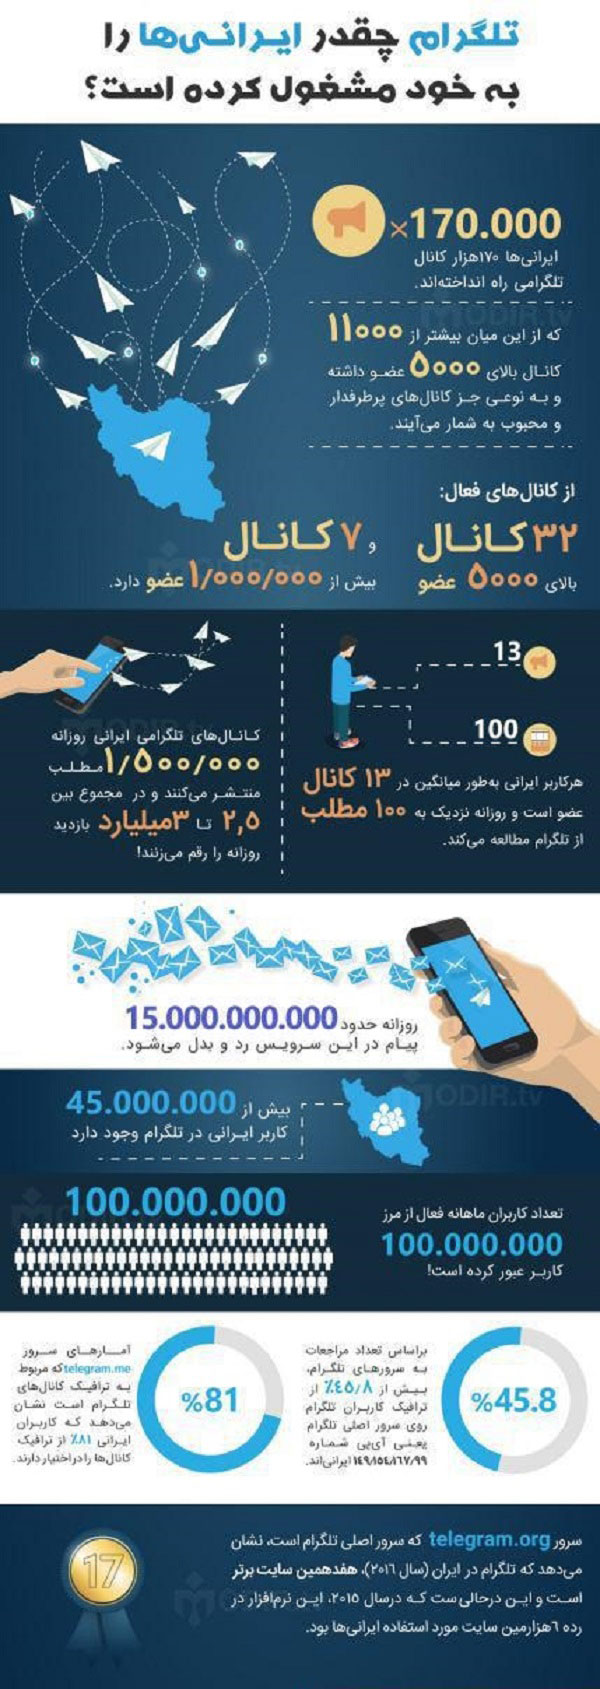 تلگرام چند ایرانی‌ را به خود مشغول کرده؟